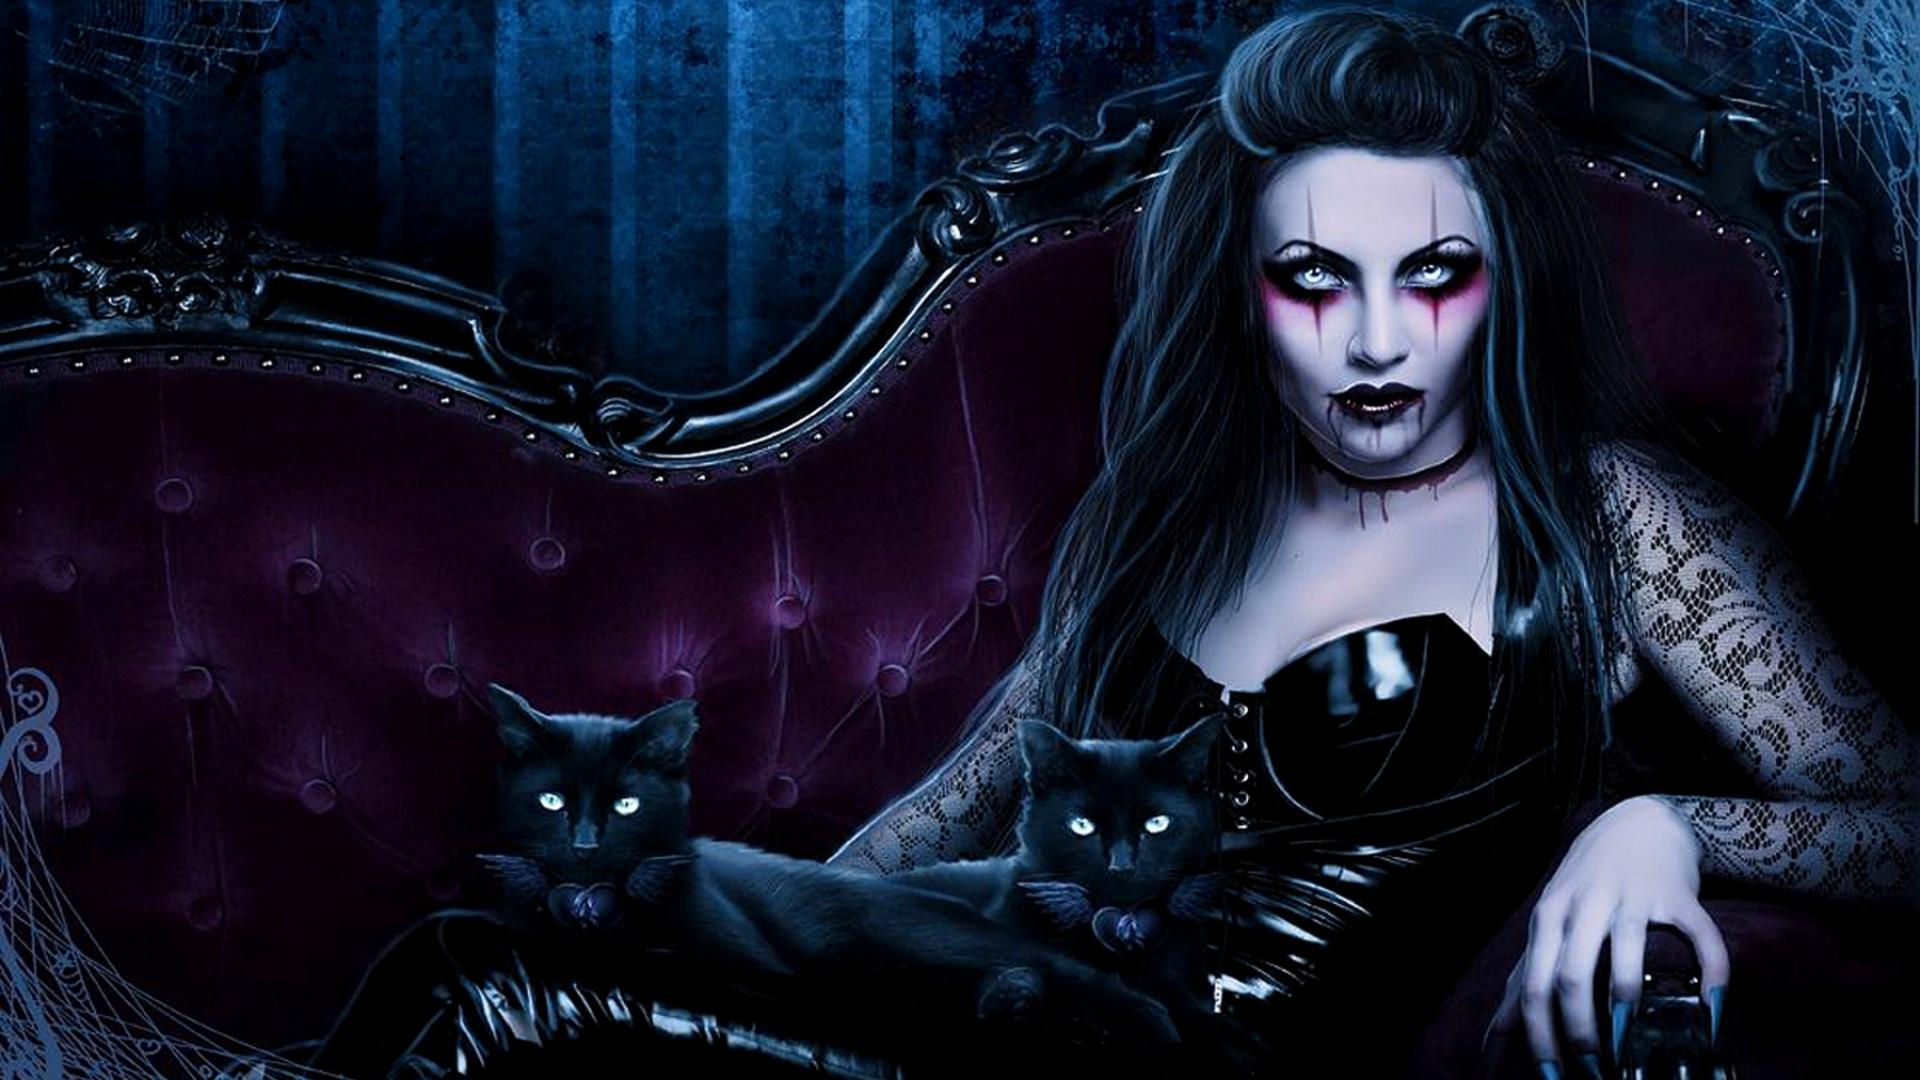 Dark fantasy gothic vampire evil horror cats art wallpaperx1080